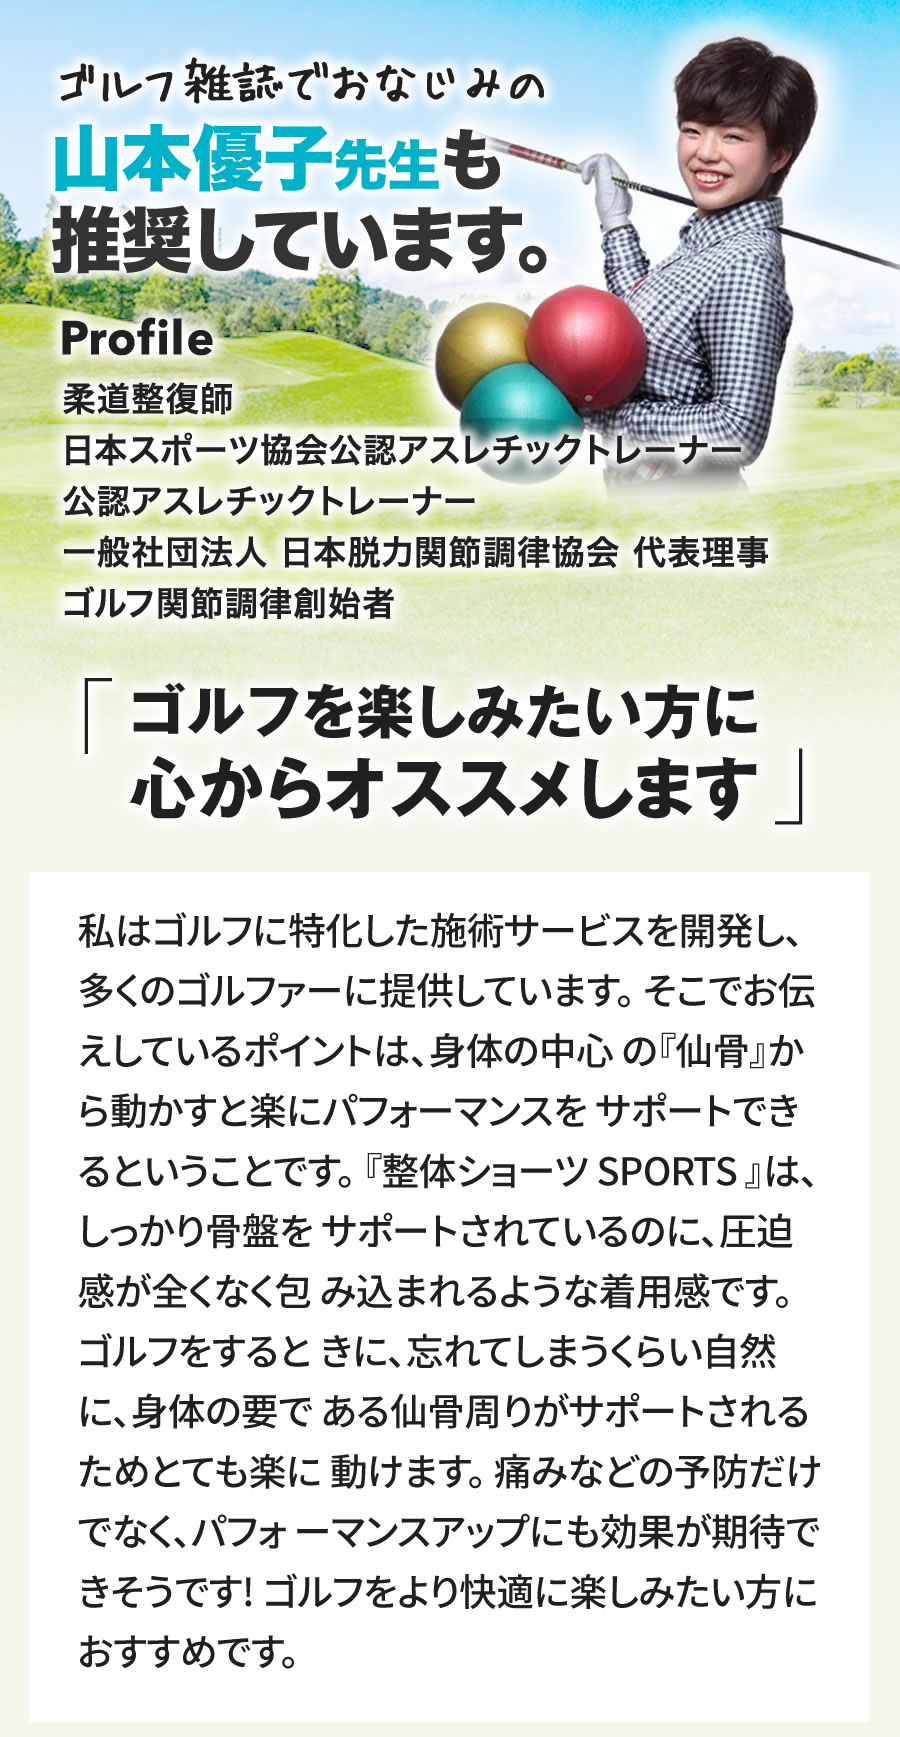 ゴルフ雑誌でおなじみの山本優子先生も推奨しています。